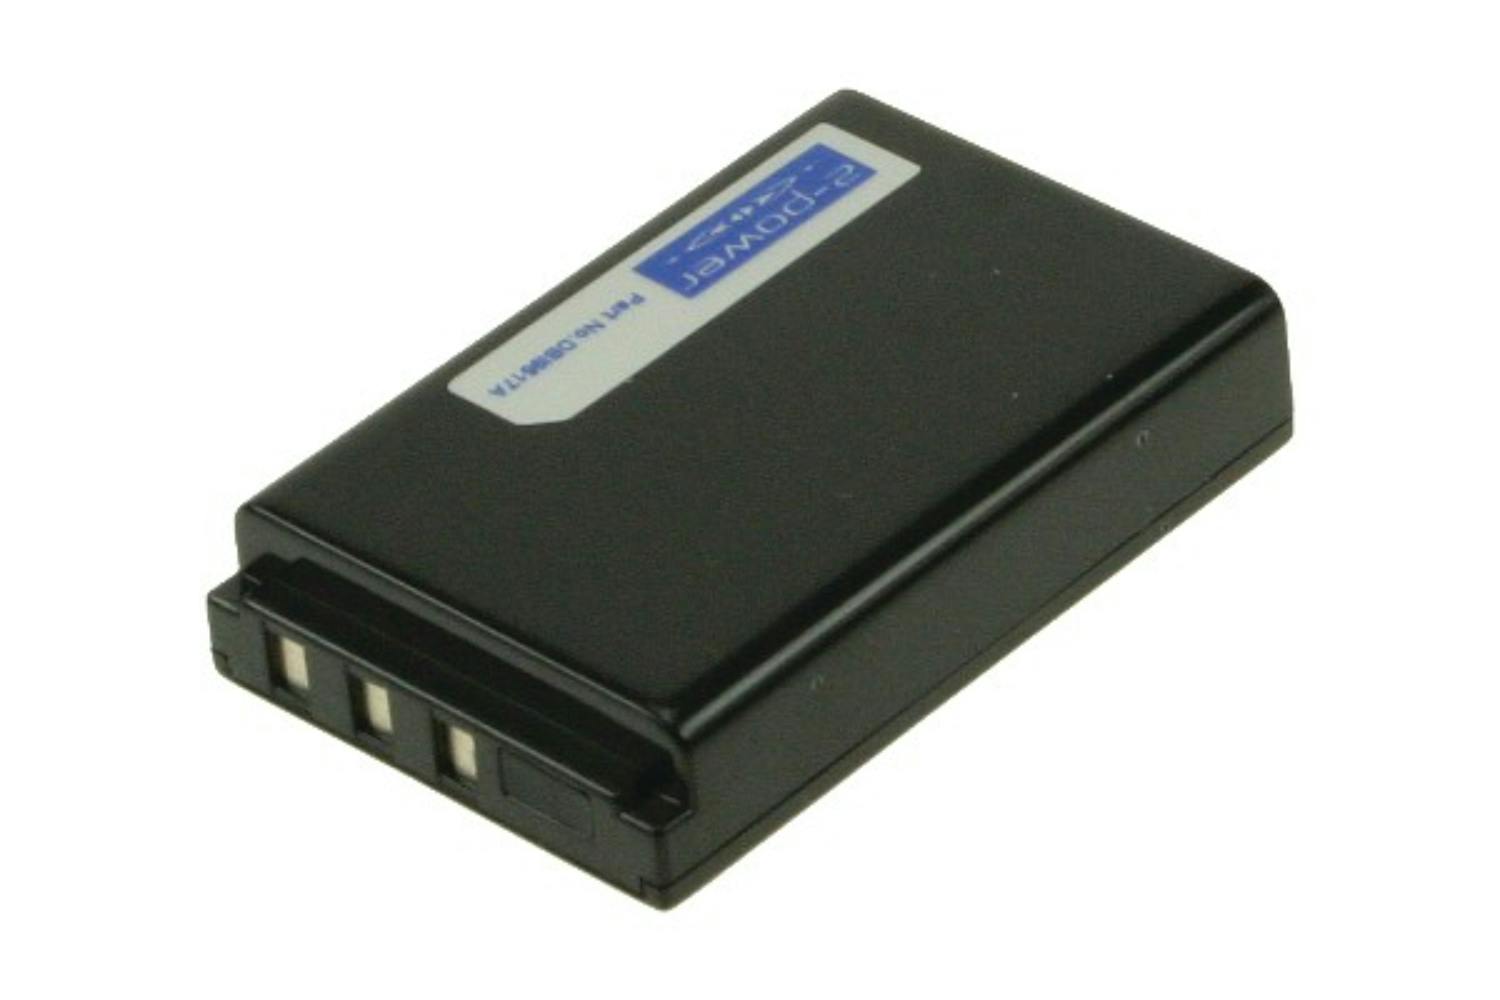 2-Power Digital Camera Battery 3.7V 1600mAh